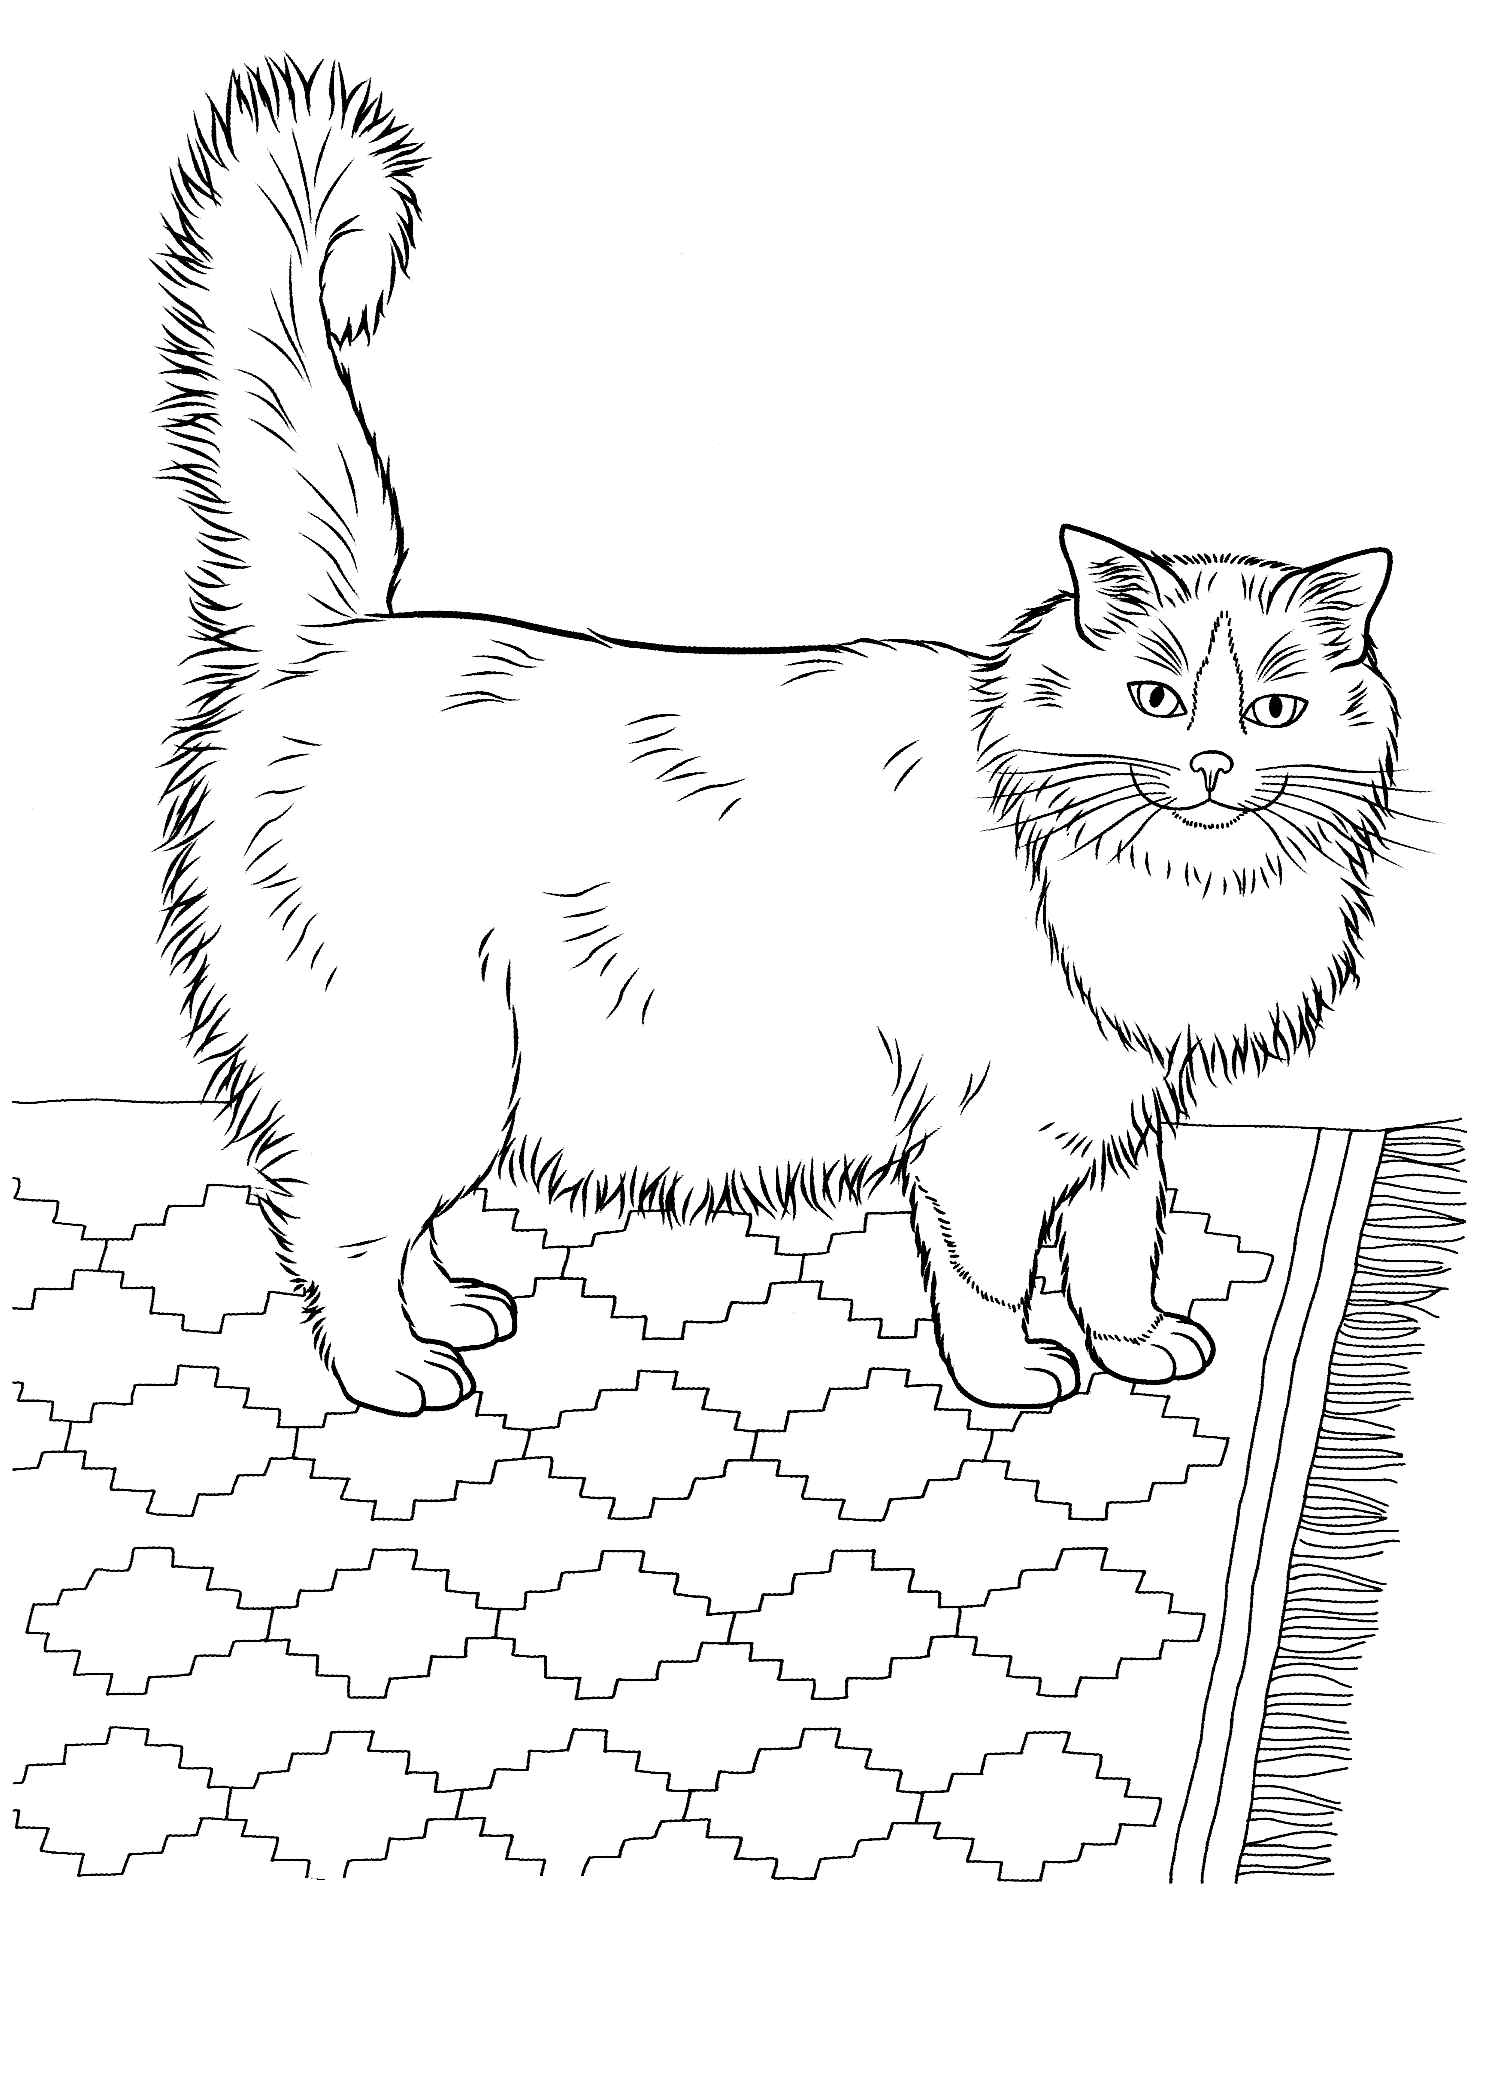 Kolorowanka kot bardzo gruby i puszysty stoi na dywanie z wzorkami